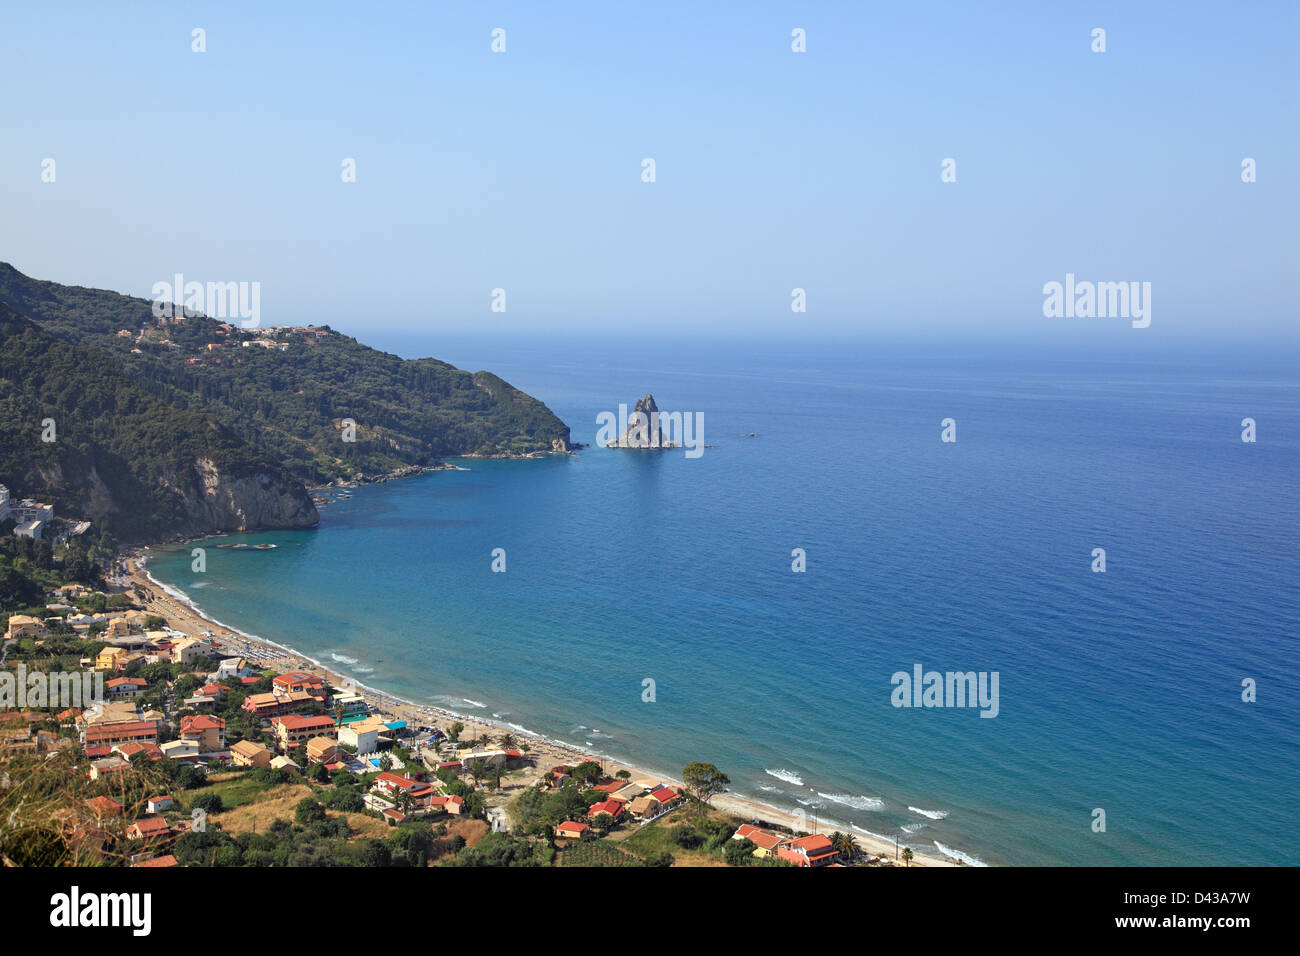 Paysage méditerranéen, high angle view. L'île de Corfou, Grèce Banque D'Images